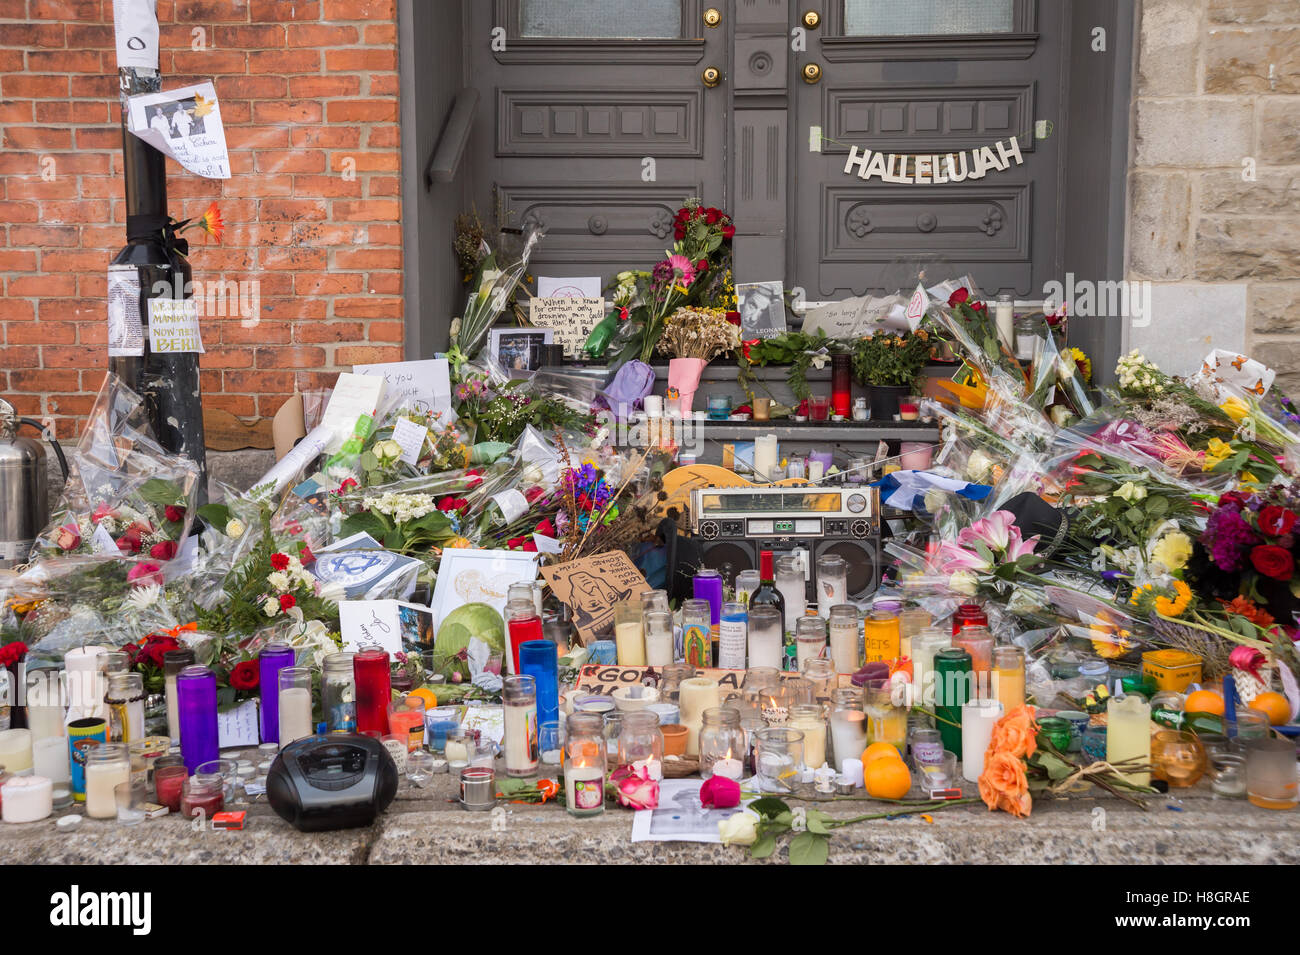 Montréal, Canada. 12 novembre, 2016. Hommage à Leonard Cohen en face de sa maison sur la rue Vallières. L'artiste canadien est décédé le 7 novembre. Crédit : Marc Bruxelles/Alamy Live News Banque D'Images